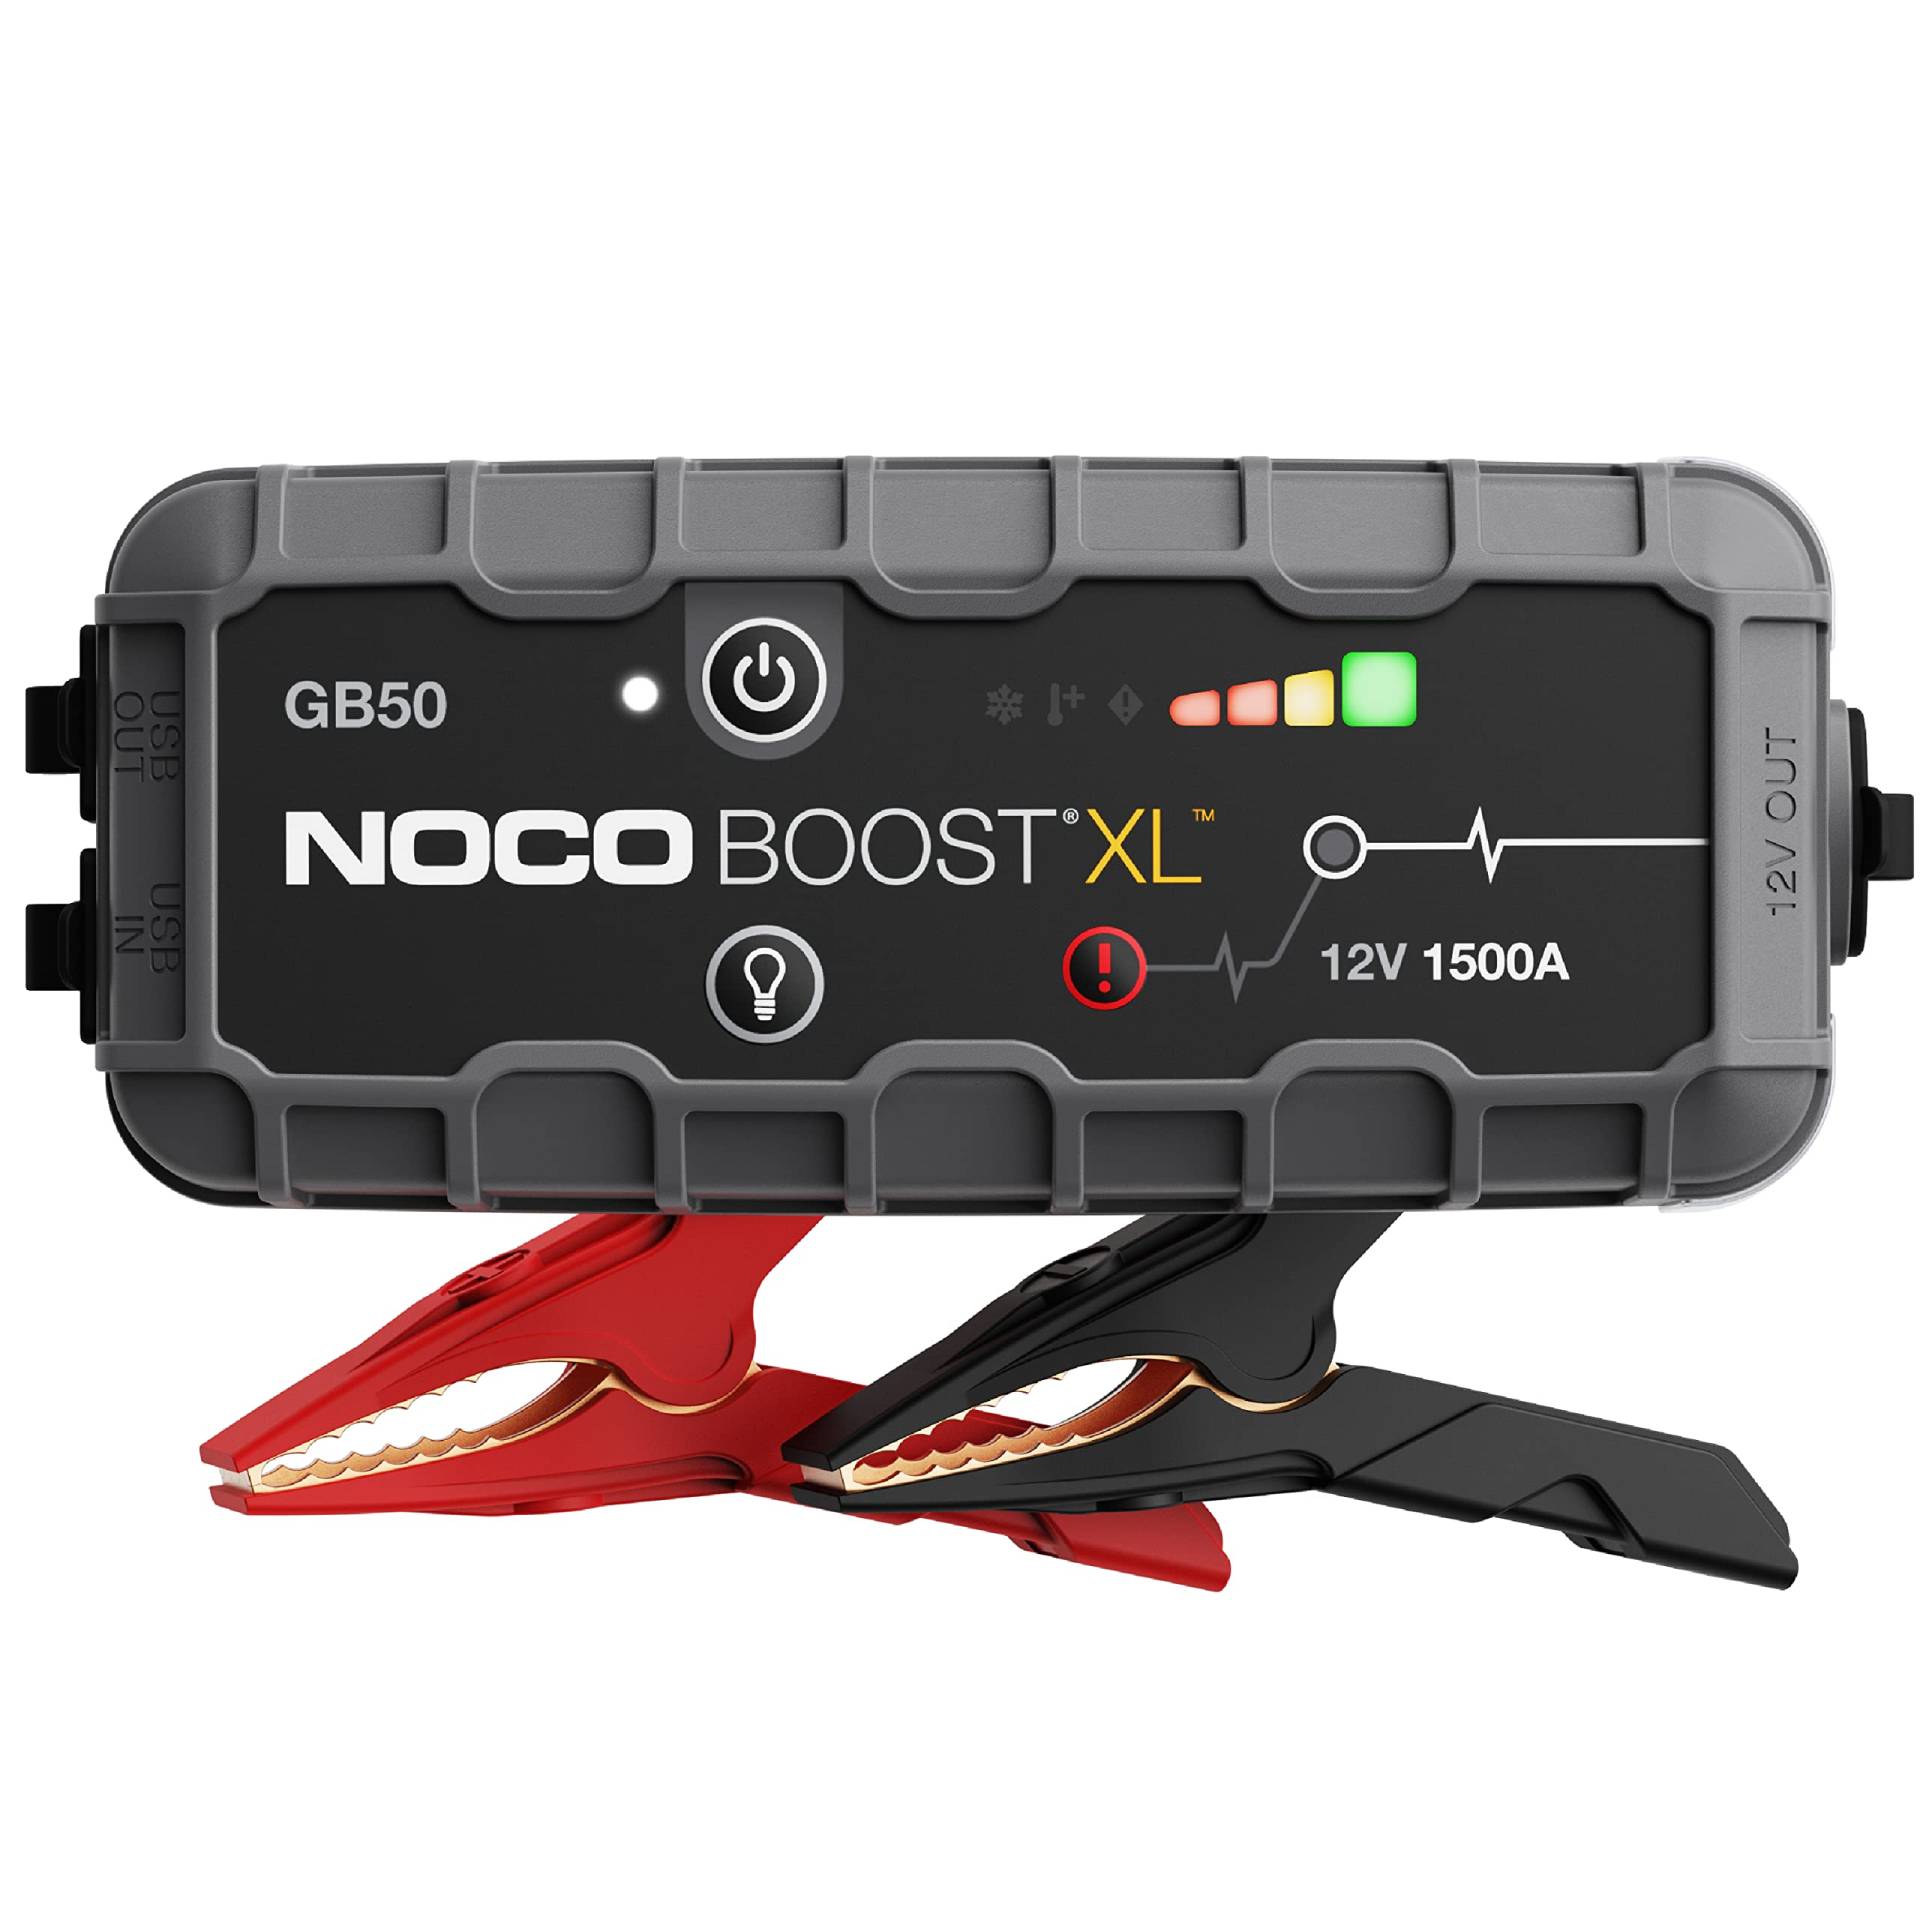 NOCO Boost XL GB50 1500A 12V UltraSafe Starthilfe Powerbank, Auto Batterie Booster, Tragbare USB Ladegerät, Starthilfekabel und Überbrückungskabel für bis zu 7,0L Benzin und 4,5L Dieselmotoren von NOCO